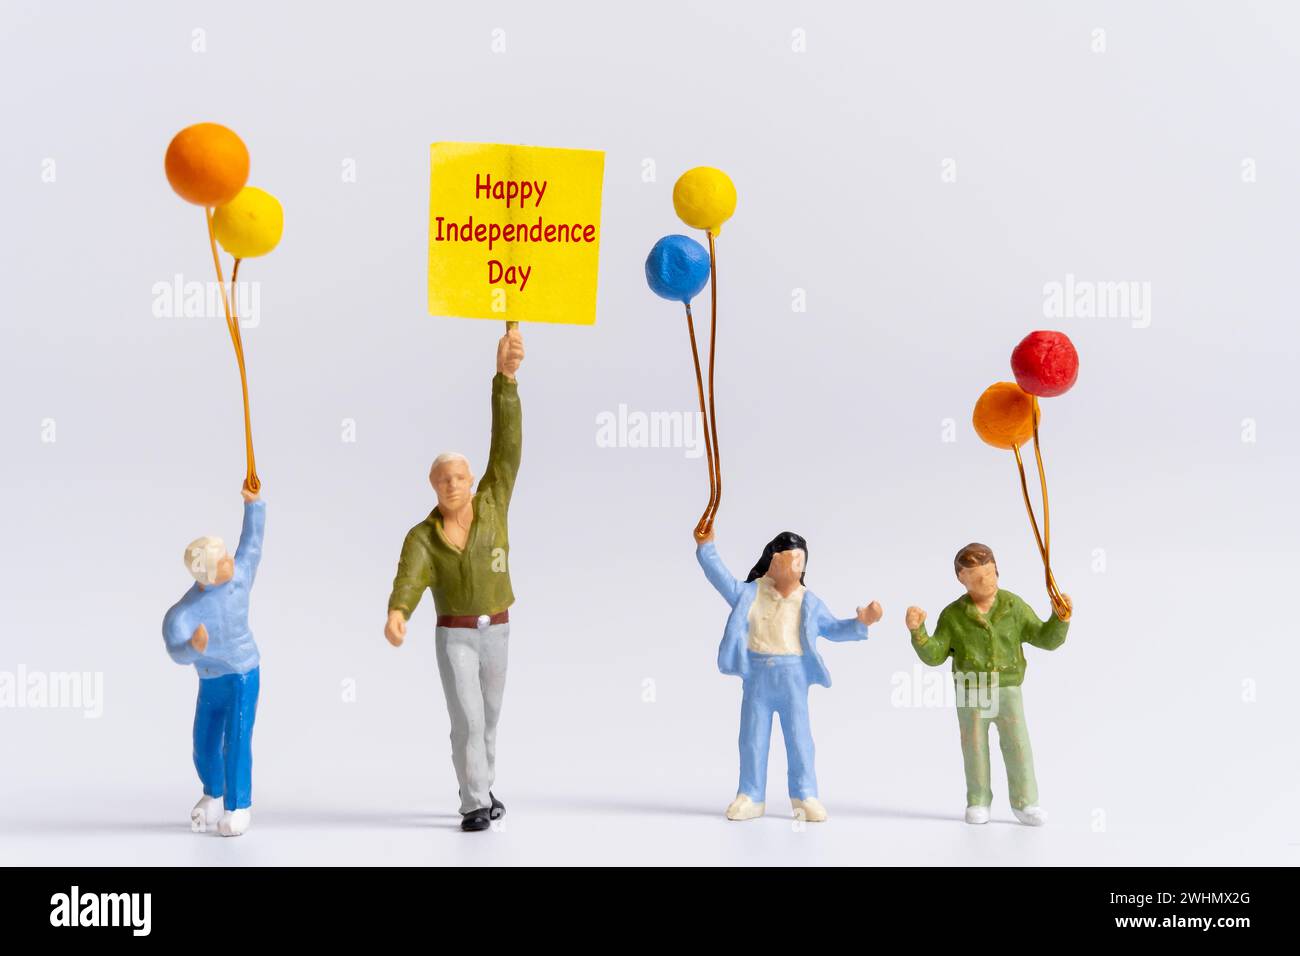 Miniatur-Leute halten Fahnen mit dem Wort Happy Independence Day Stockfoto